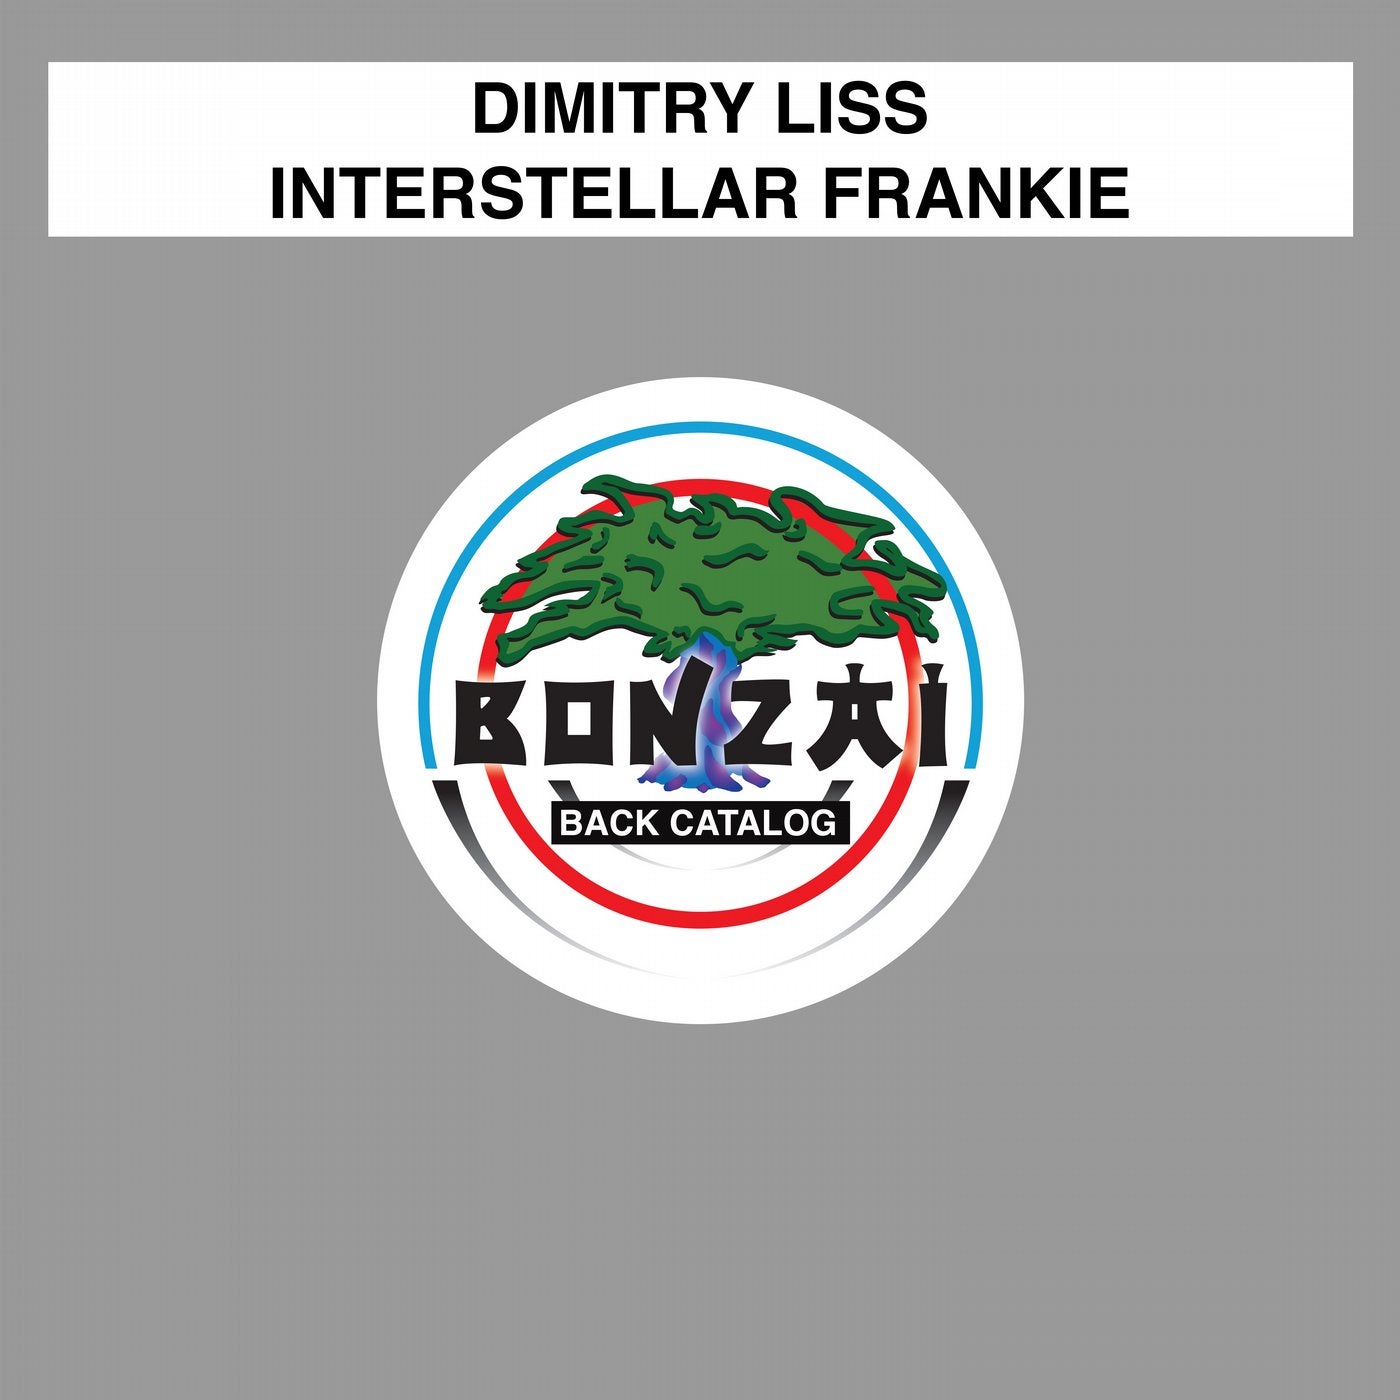 Interstellar Frankie